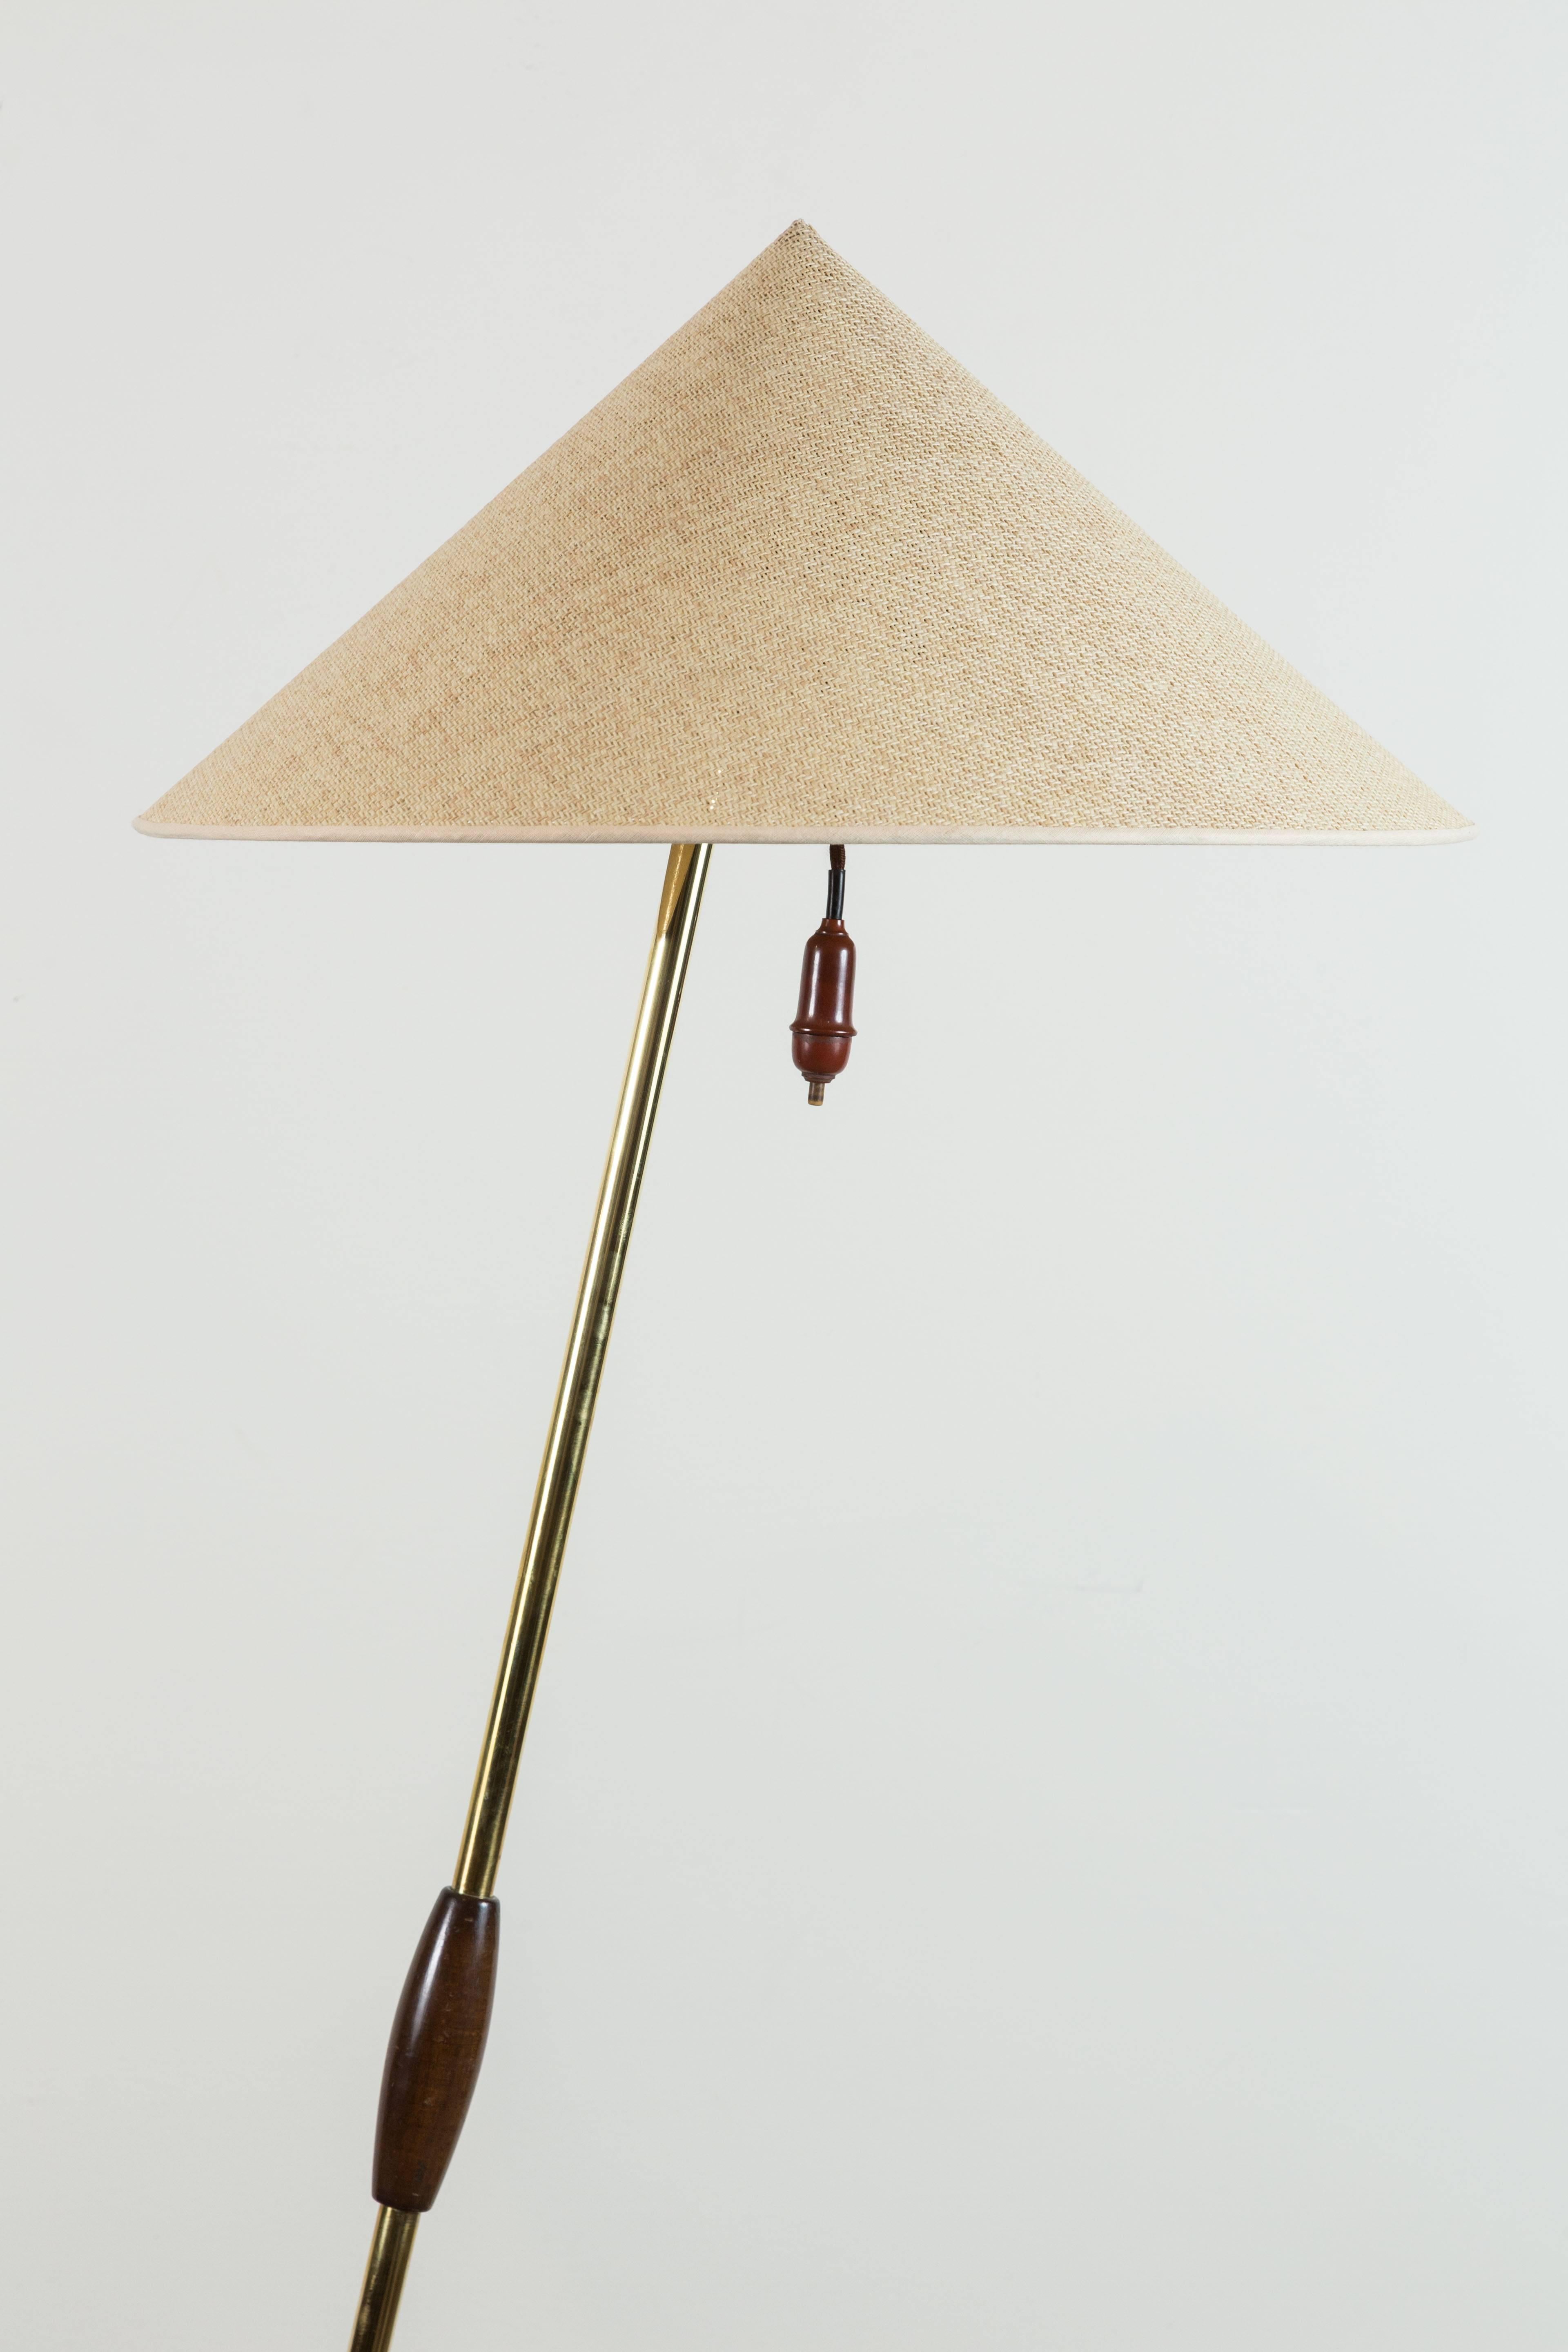 Brass floor lamp by Rupert Nikoll.